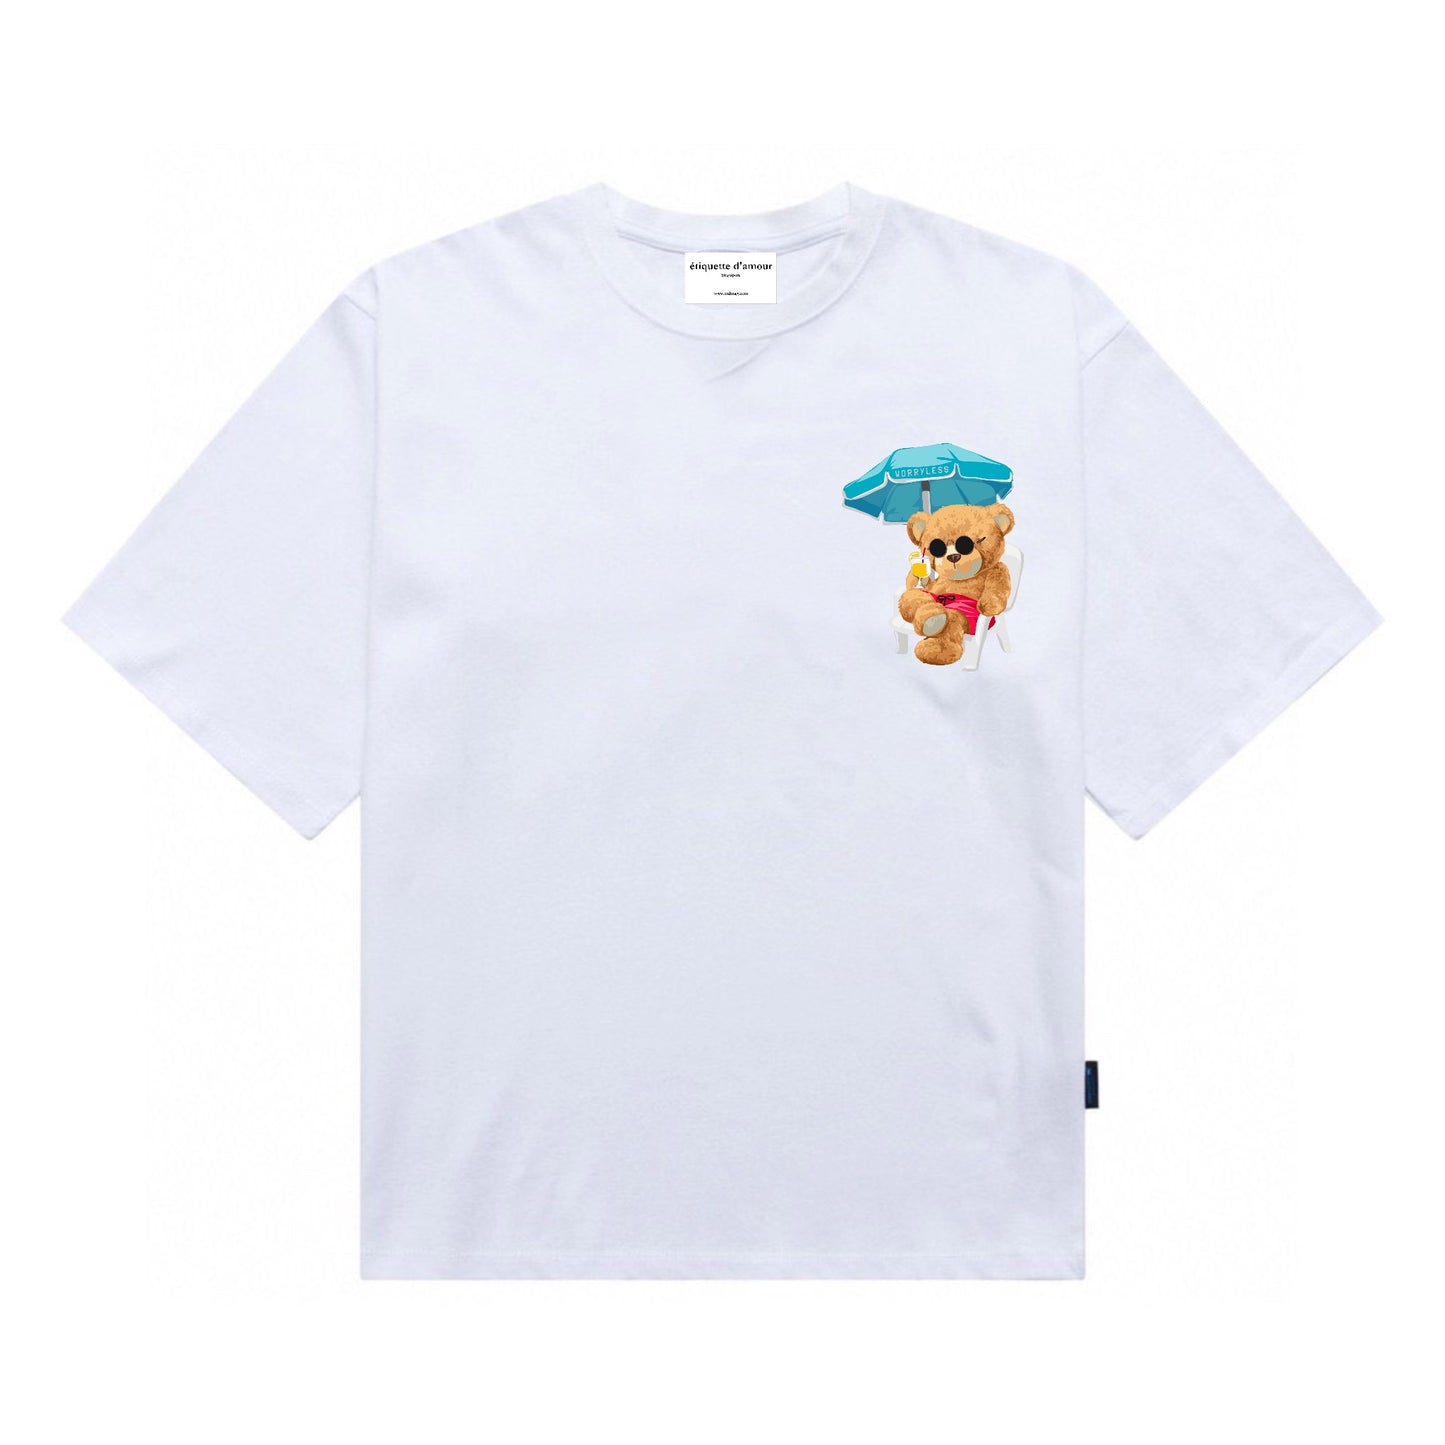 Etiquette Oversized T-Shirt - [0157] Worryless Beach Bear